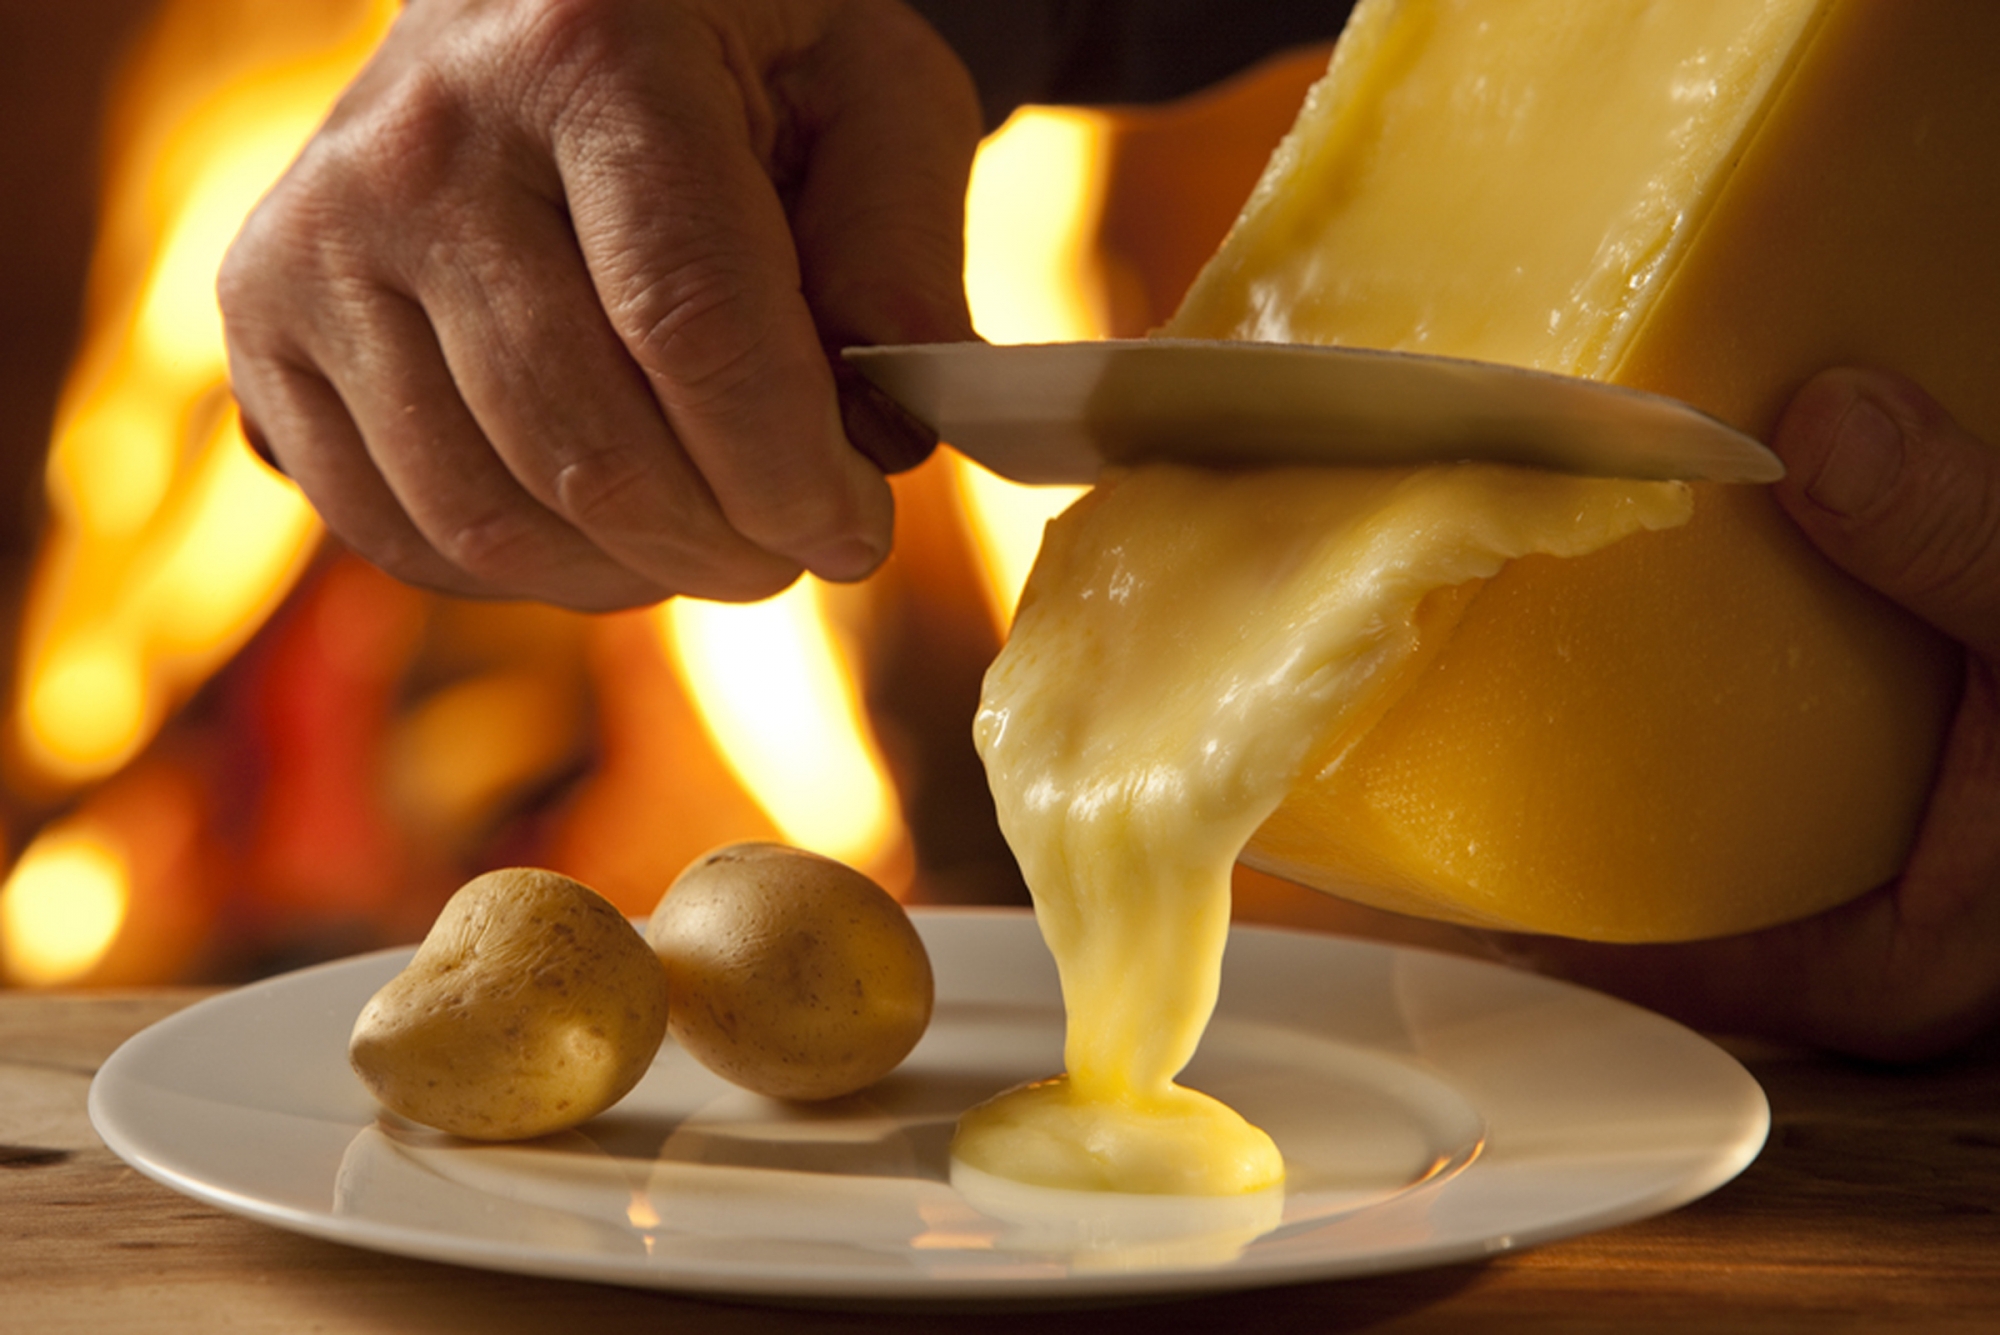 Près de huit tonnes de fromage sont concernées par cette grave affaire.